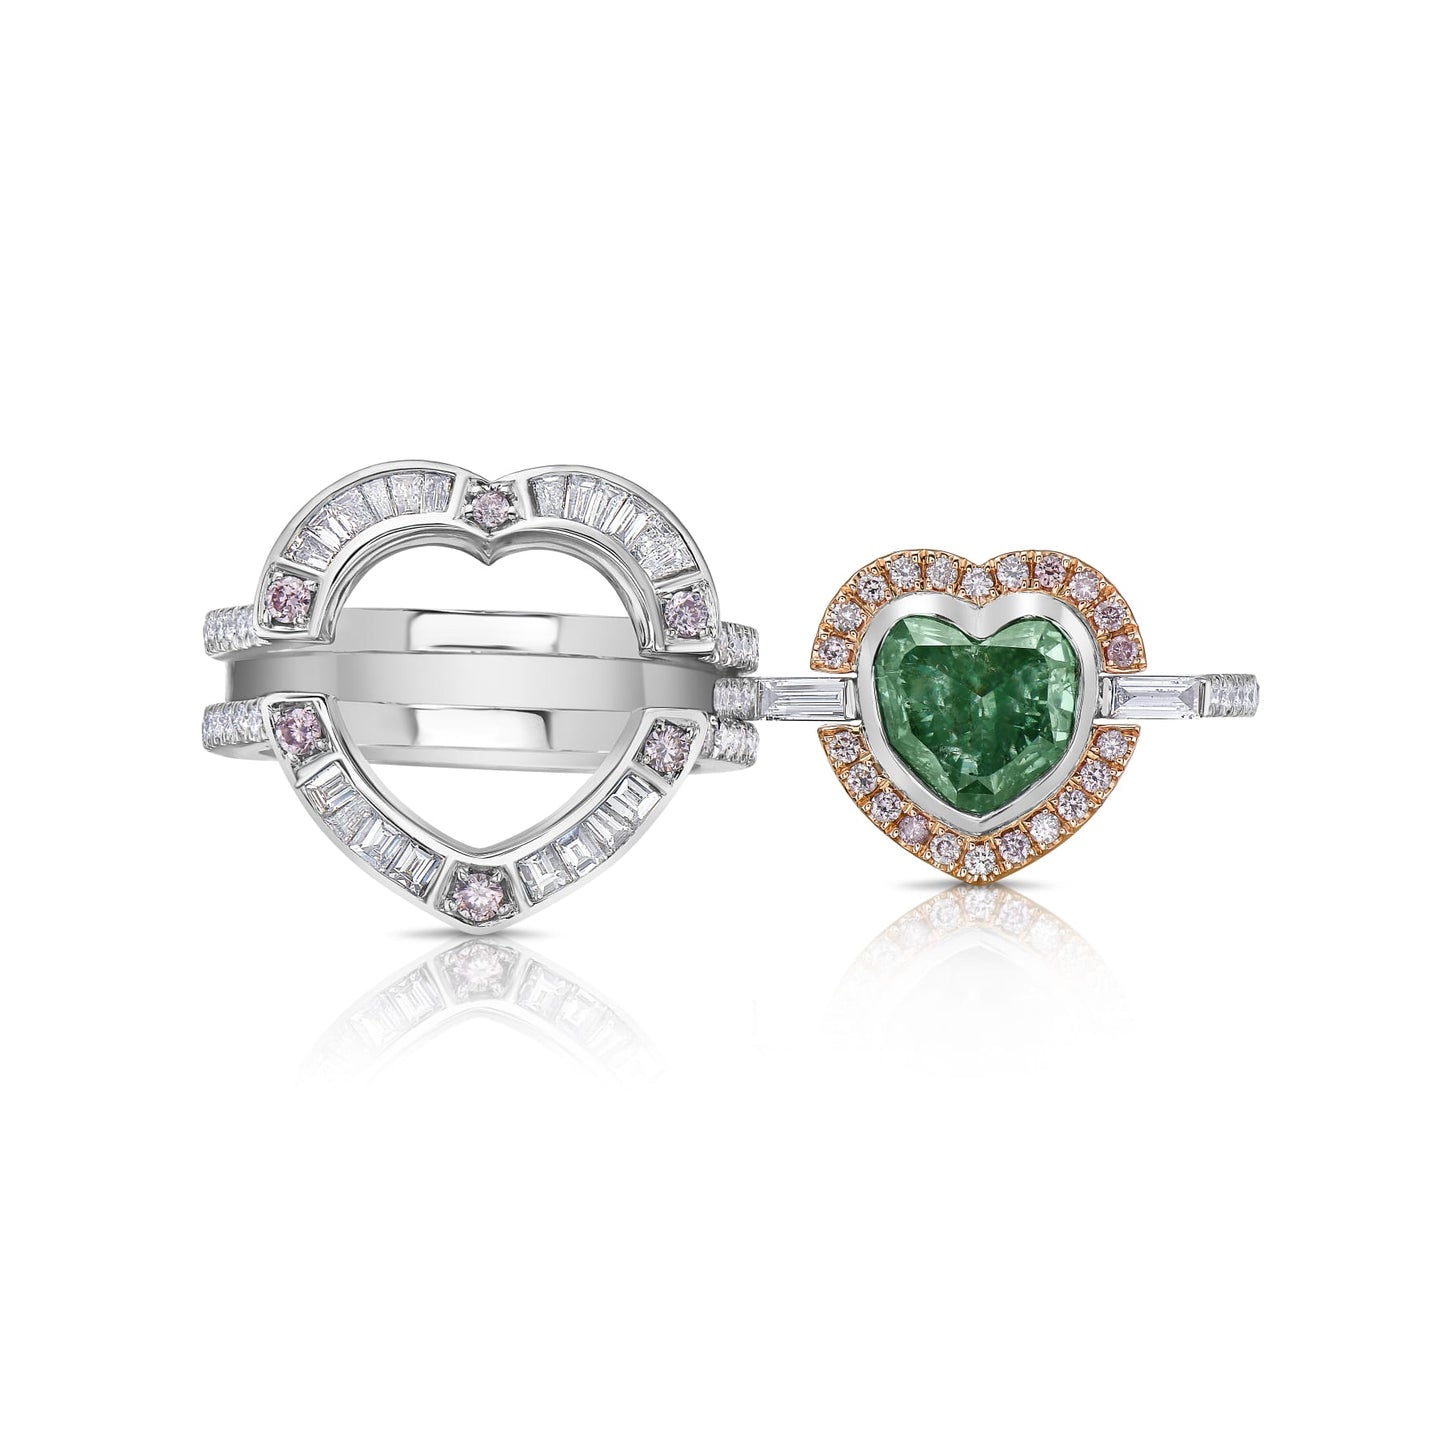 2 carat fancy intense green heart shape diamond. Fancy intense green diamond. Green diamond heart shape